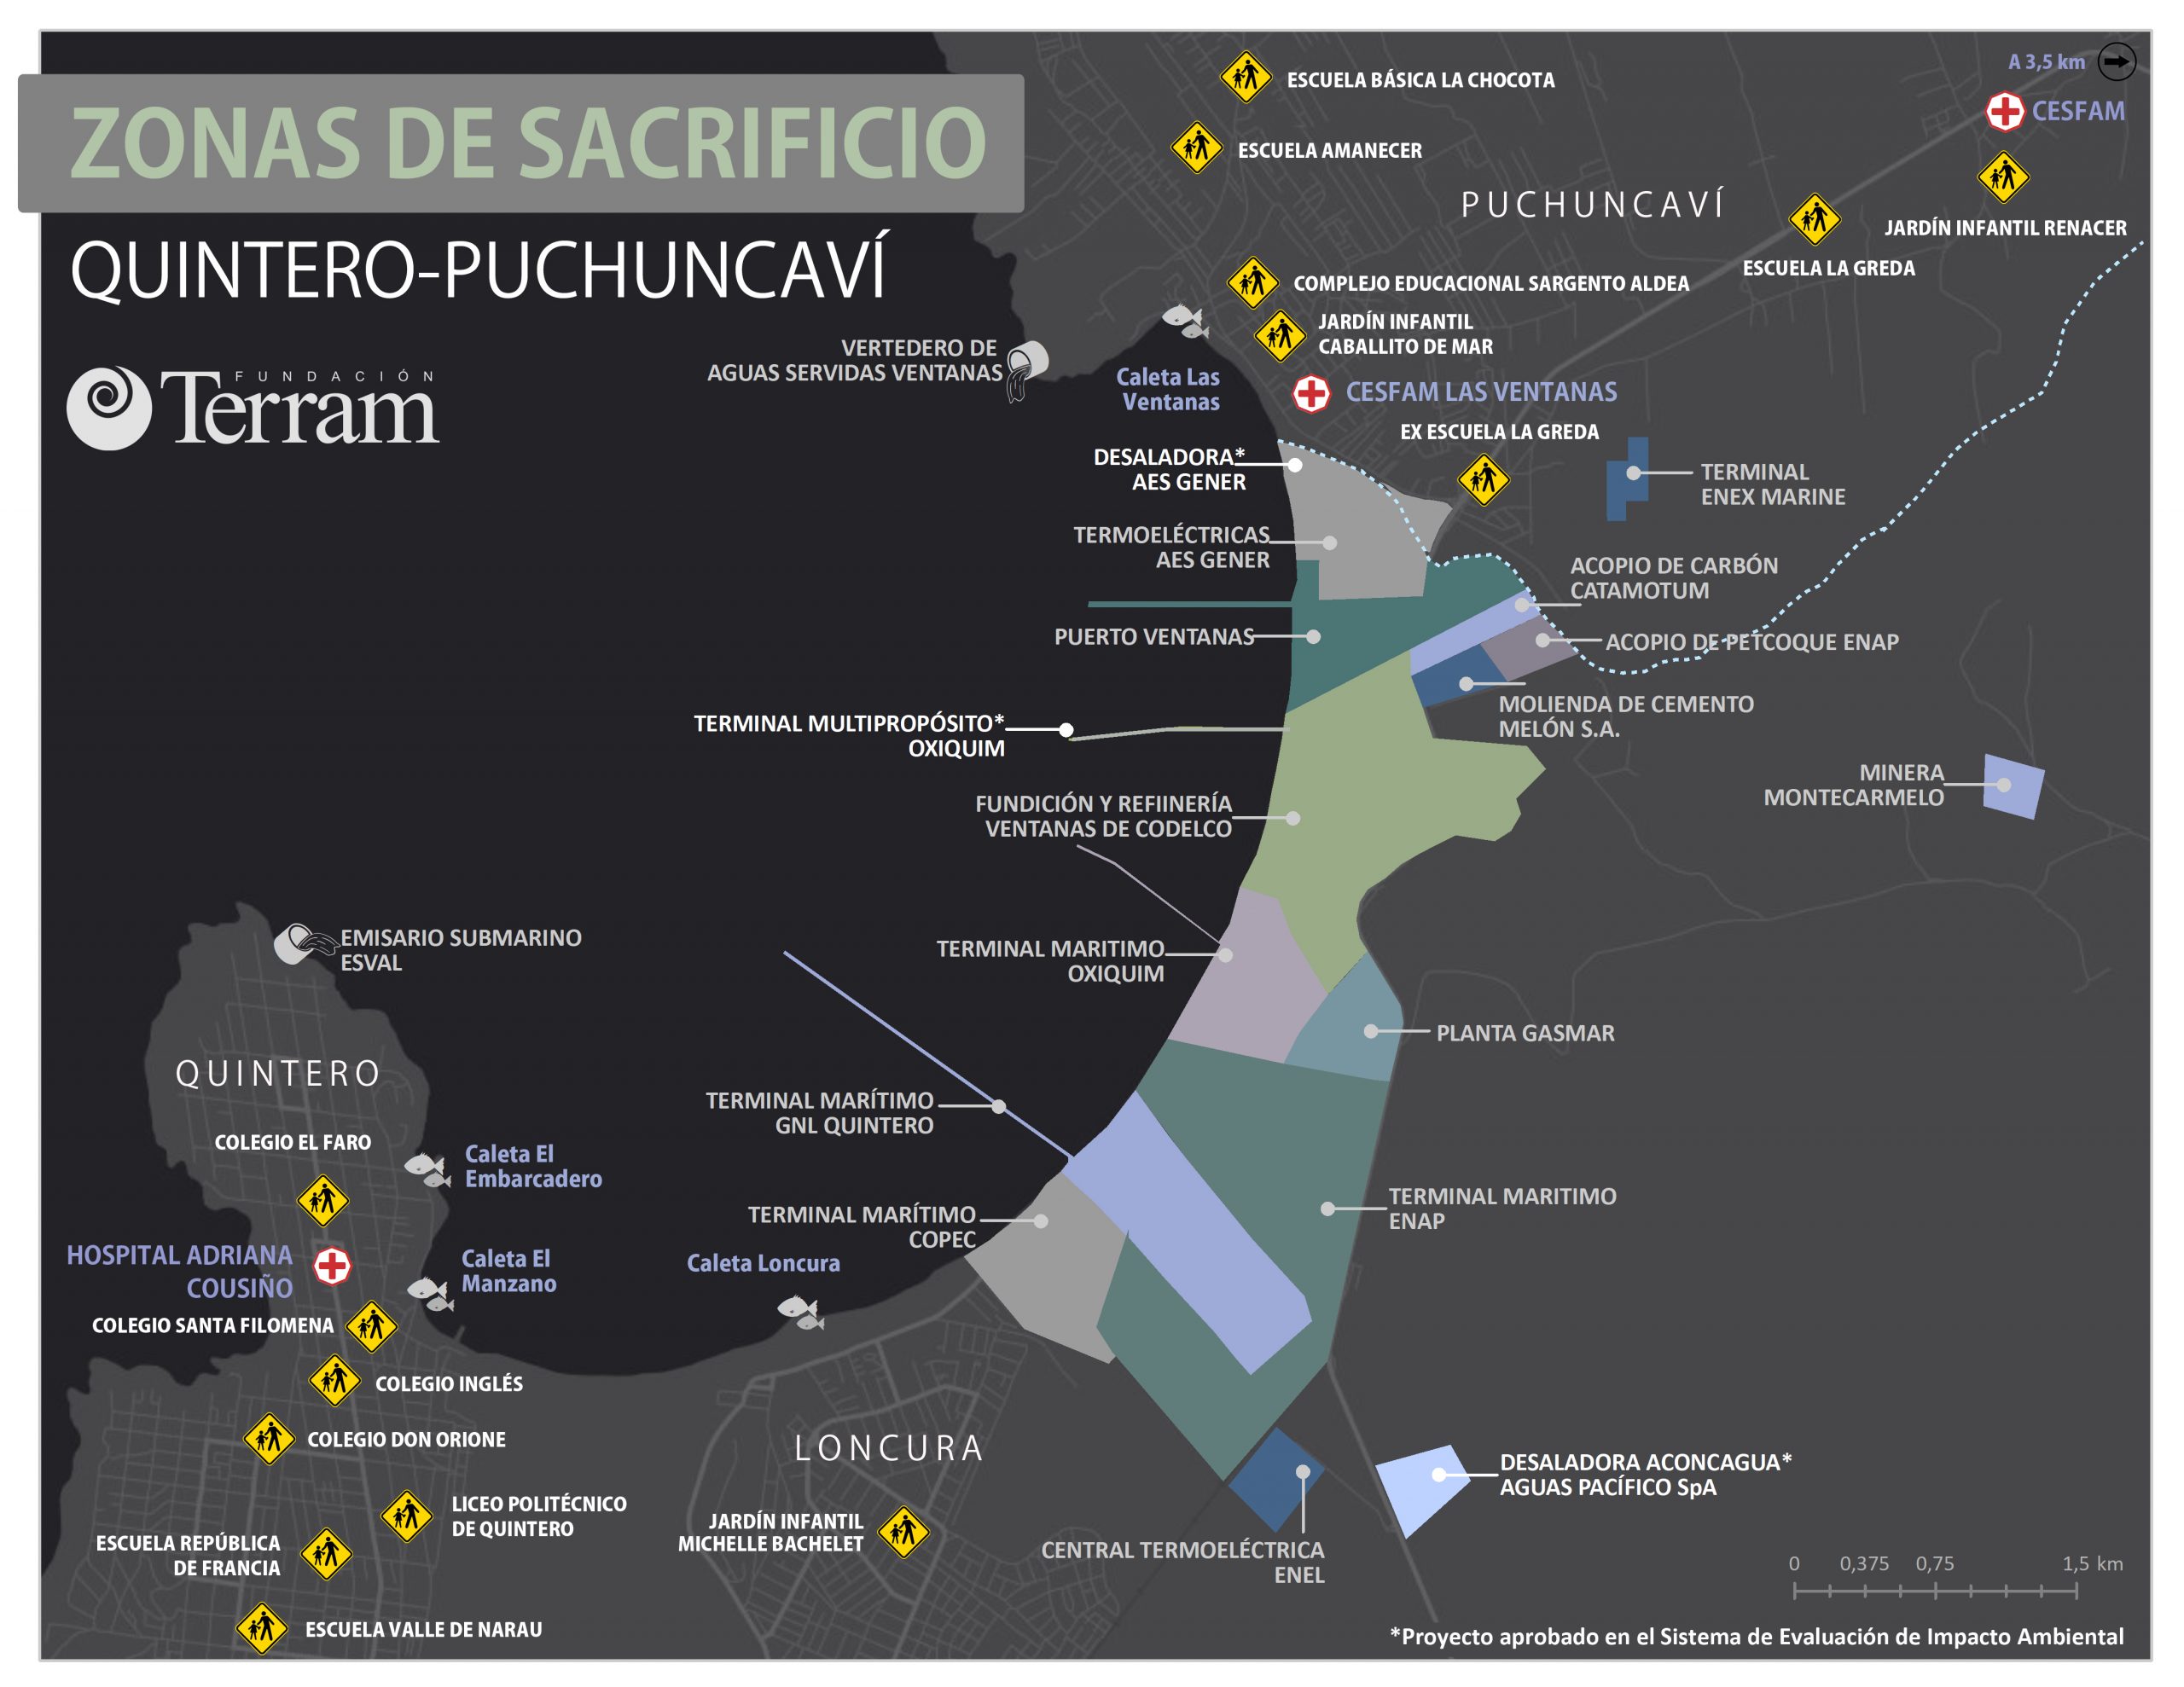 [Infografía] Zonas de sacrificio: a dos años de las intoxicaciones masivas en Quintero y Puchuncaví